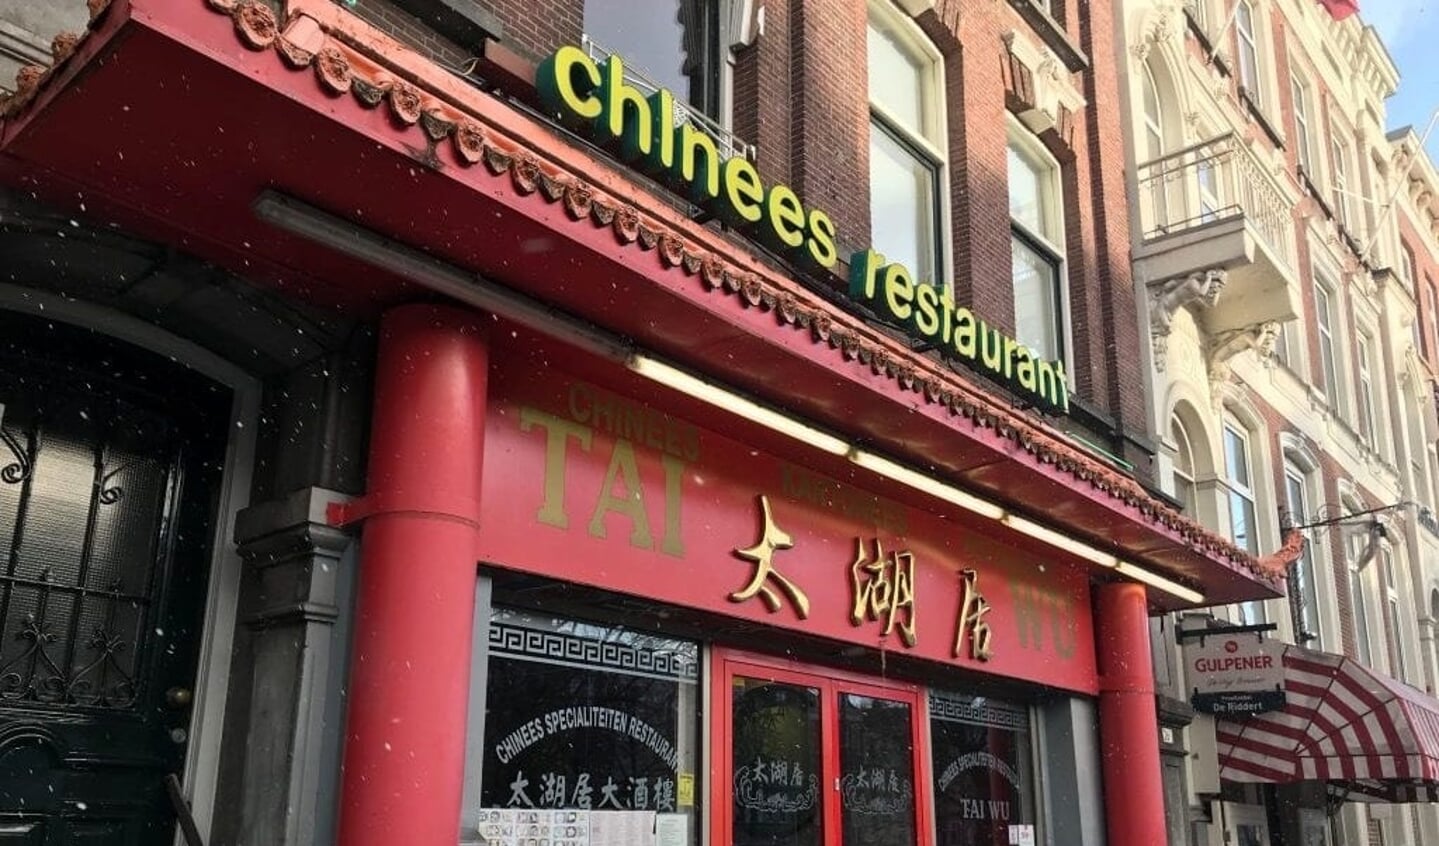 Het Chinese restaurant Tai Wu aan de Mauritsweg moet haar bekende en gewaardeerde gevel inclusief lichtreclame verwijderen op last van de gemeente.